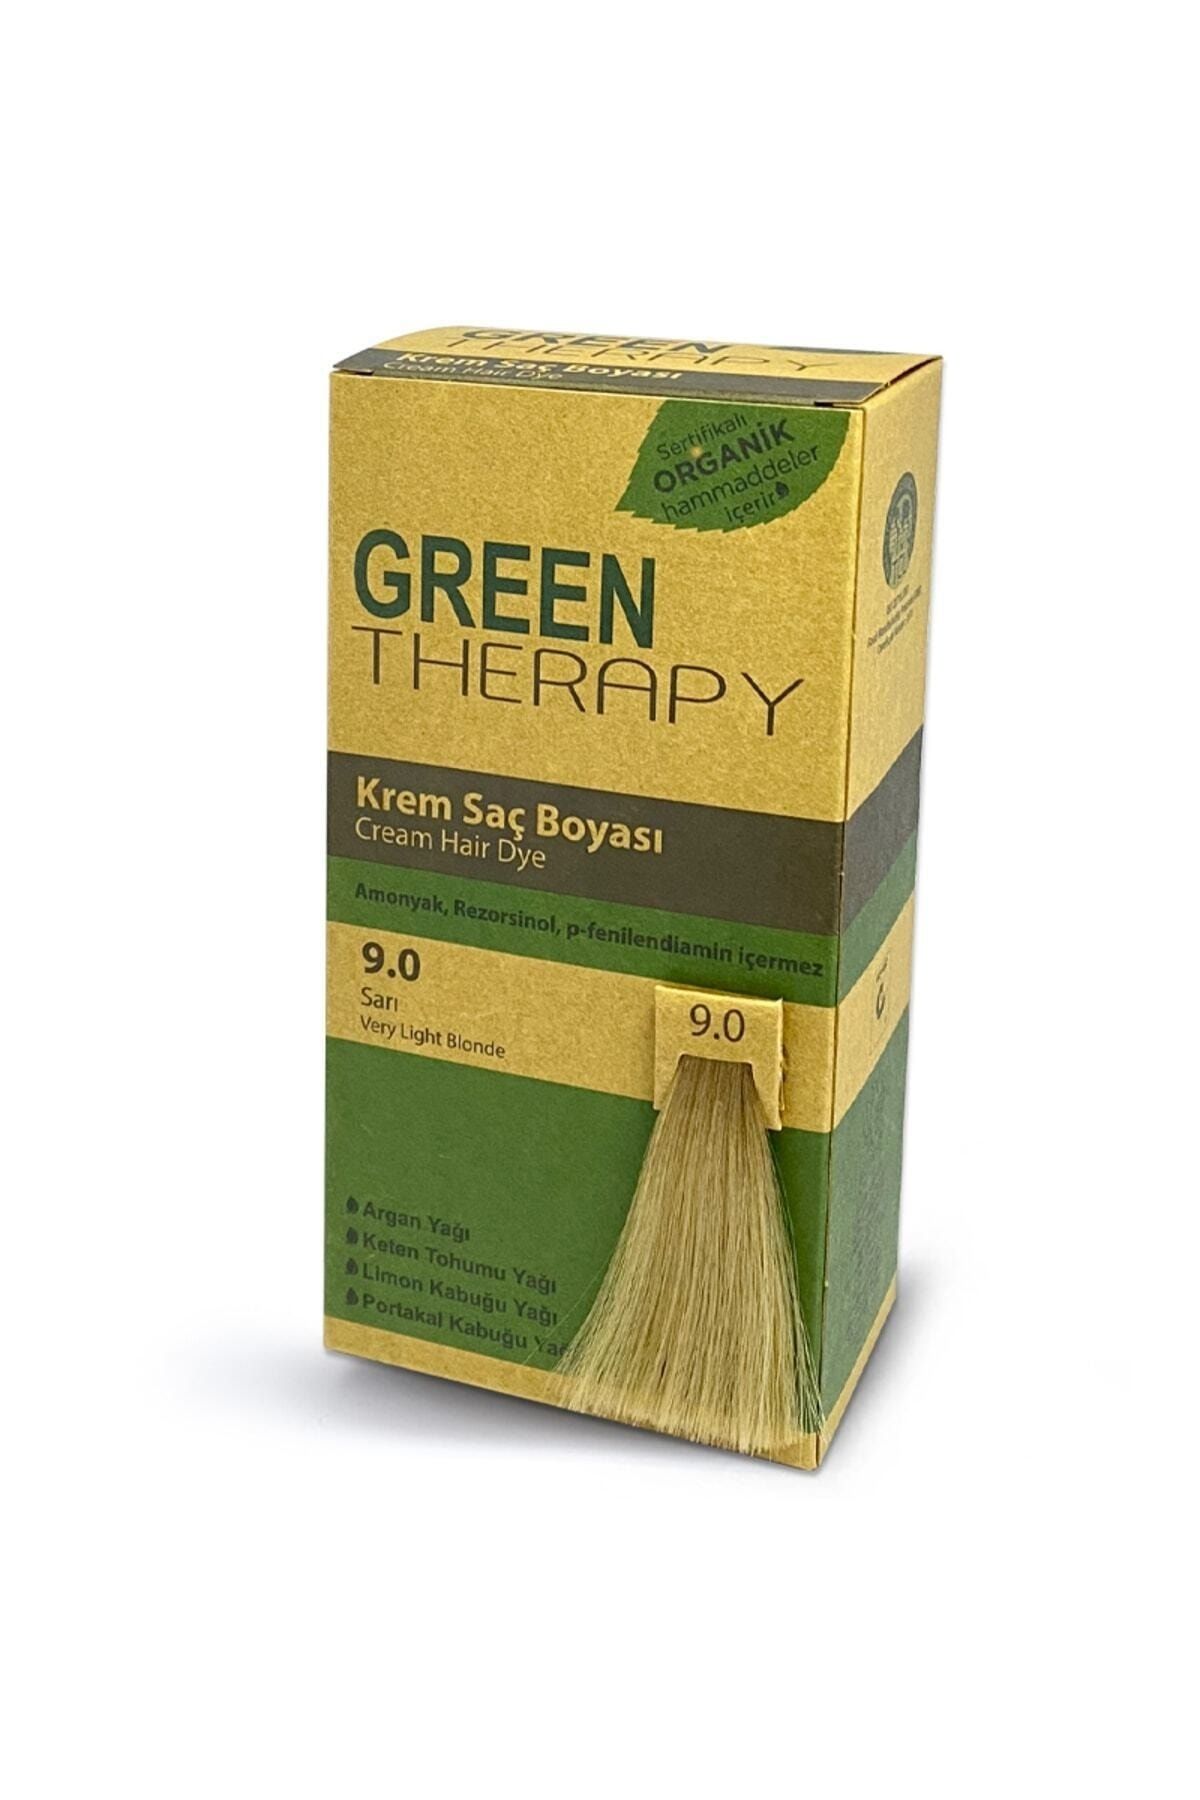 Green Therapy Krem Saç Boyası 9.0 Sarı……Koçak_12